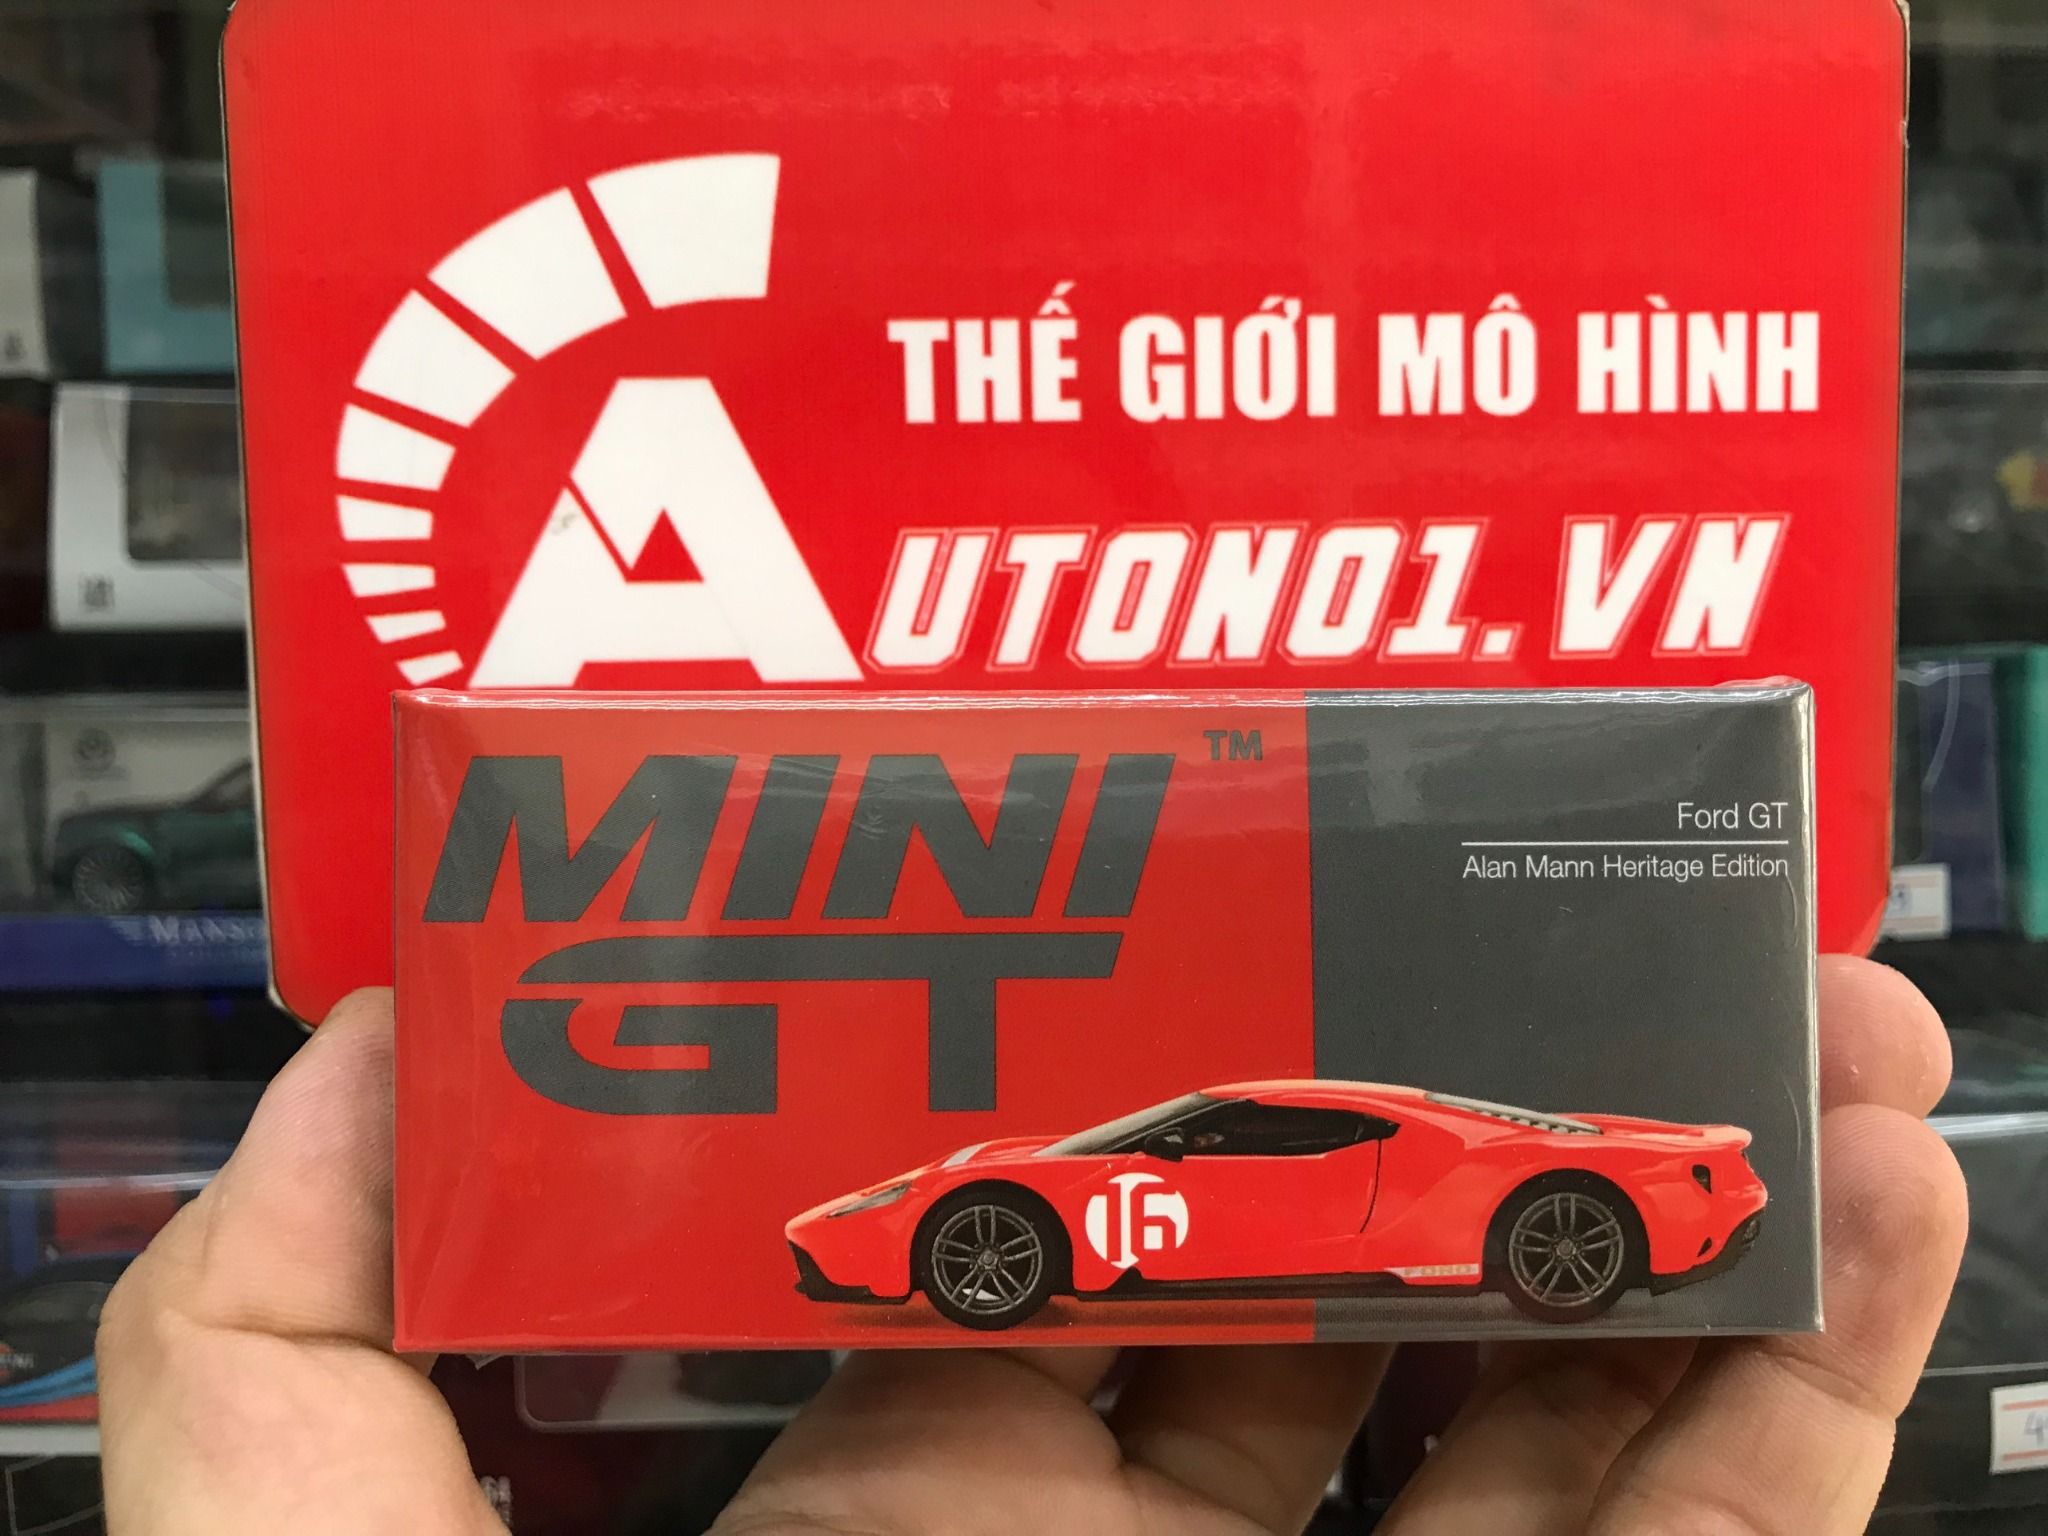  Mô hình xe Ford GT Alan Mann Heritage Edition tỉ lệ 1:64 MiniGT 